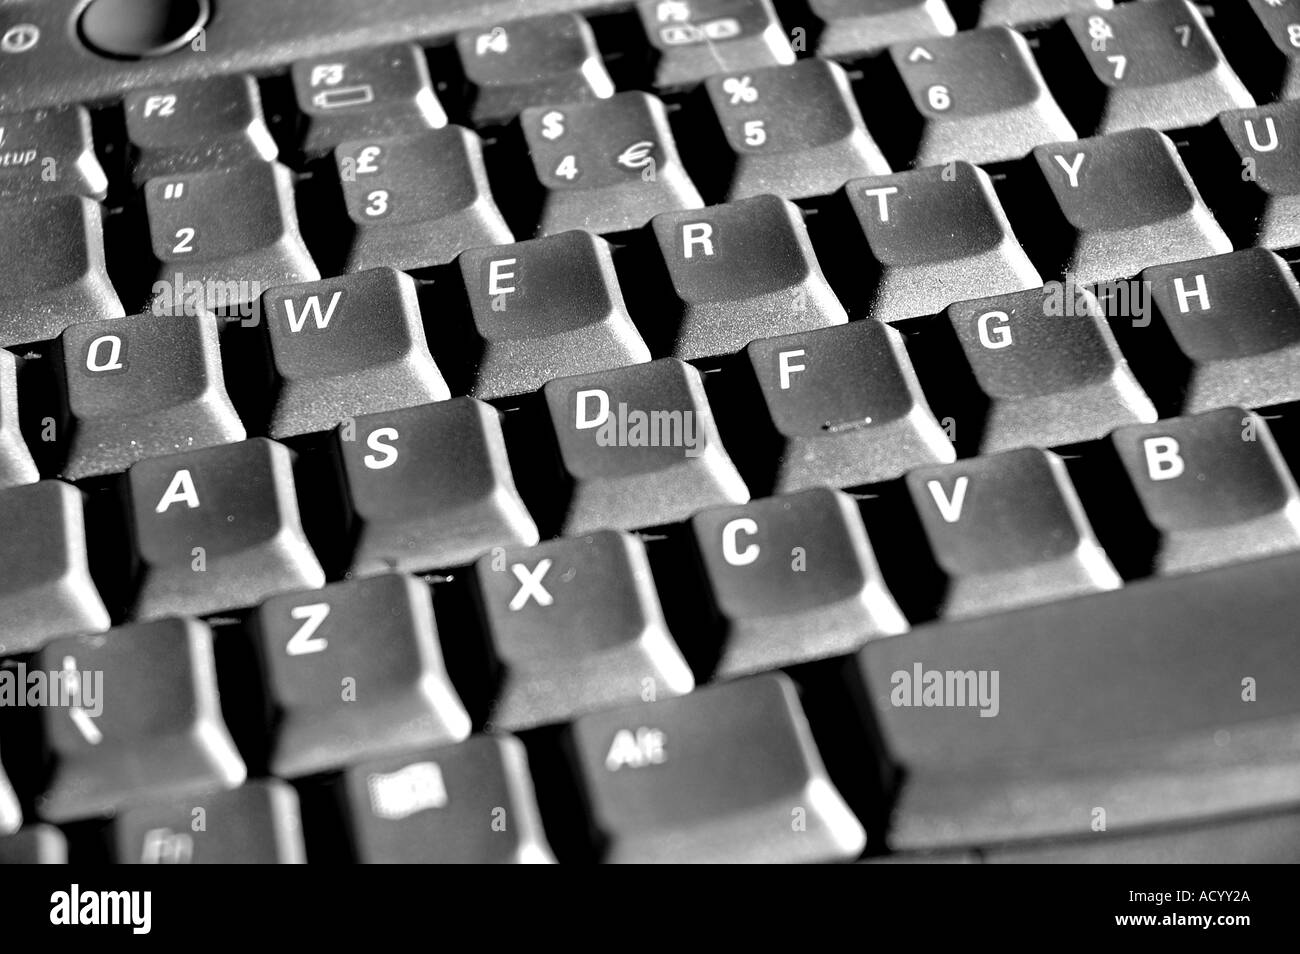 Qwerty keyboard Imágenes de stock en blanco y negro - Alamy